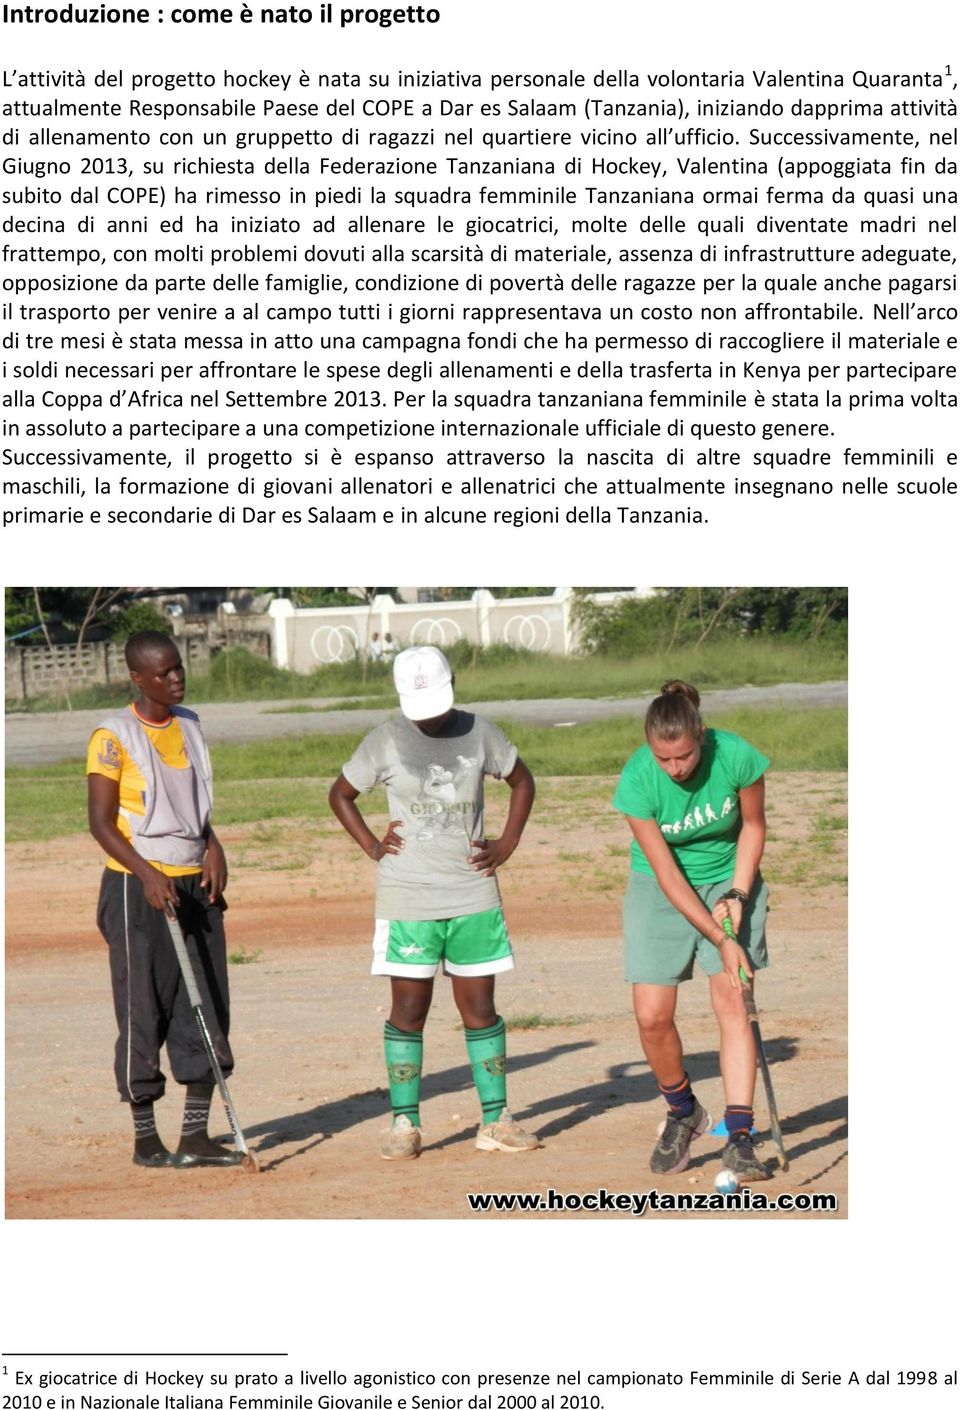 Successivamente, nel Giugno 2013, su richiesta della Federazione Tanzaniana di Hockey, Valentina (appoggiata fin da subito dal COPE) ha rimesso in piedi la squadra femminile Tanzaniana ormai ferma da